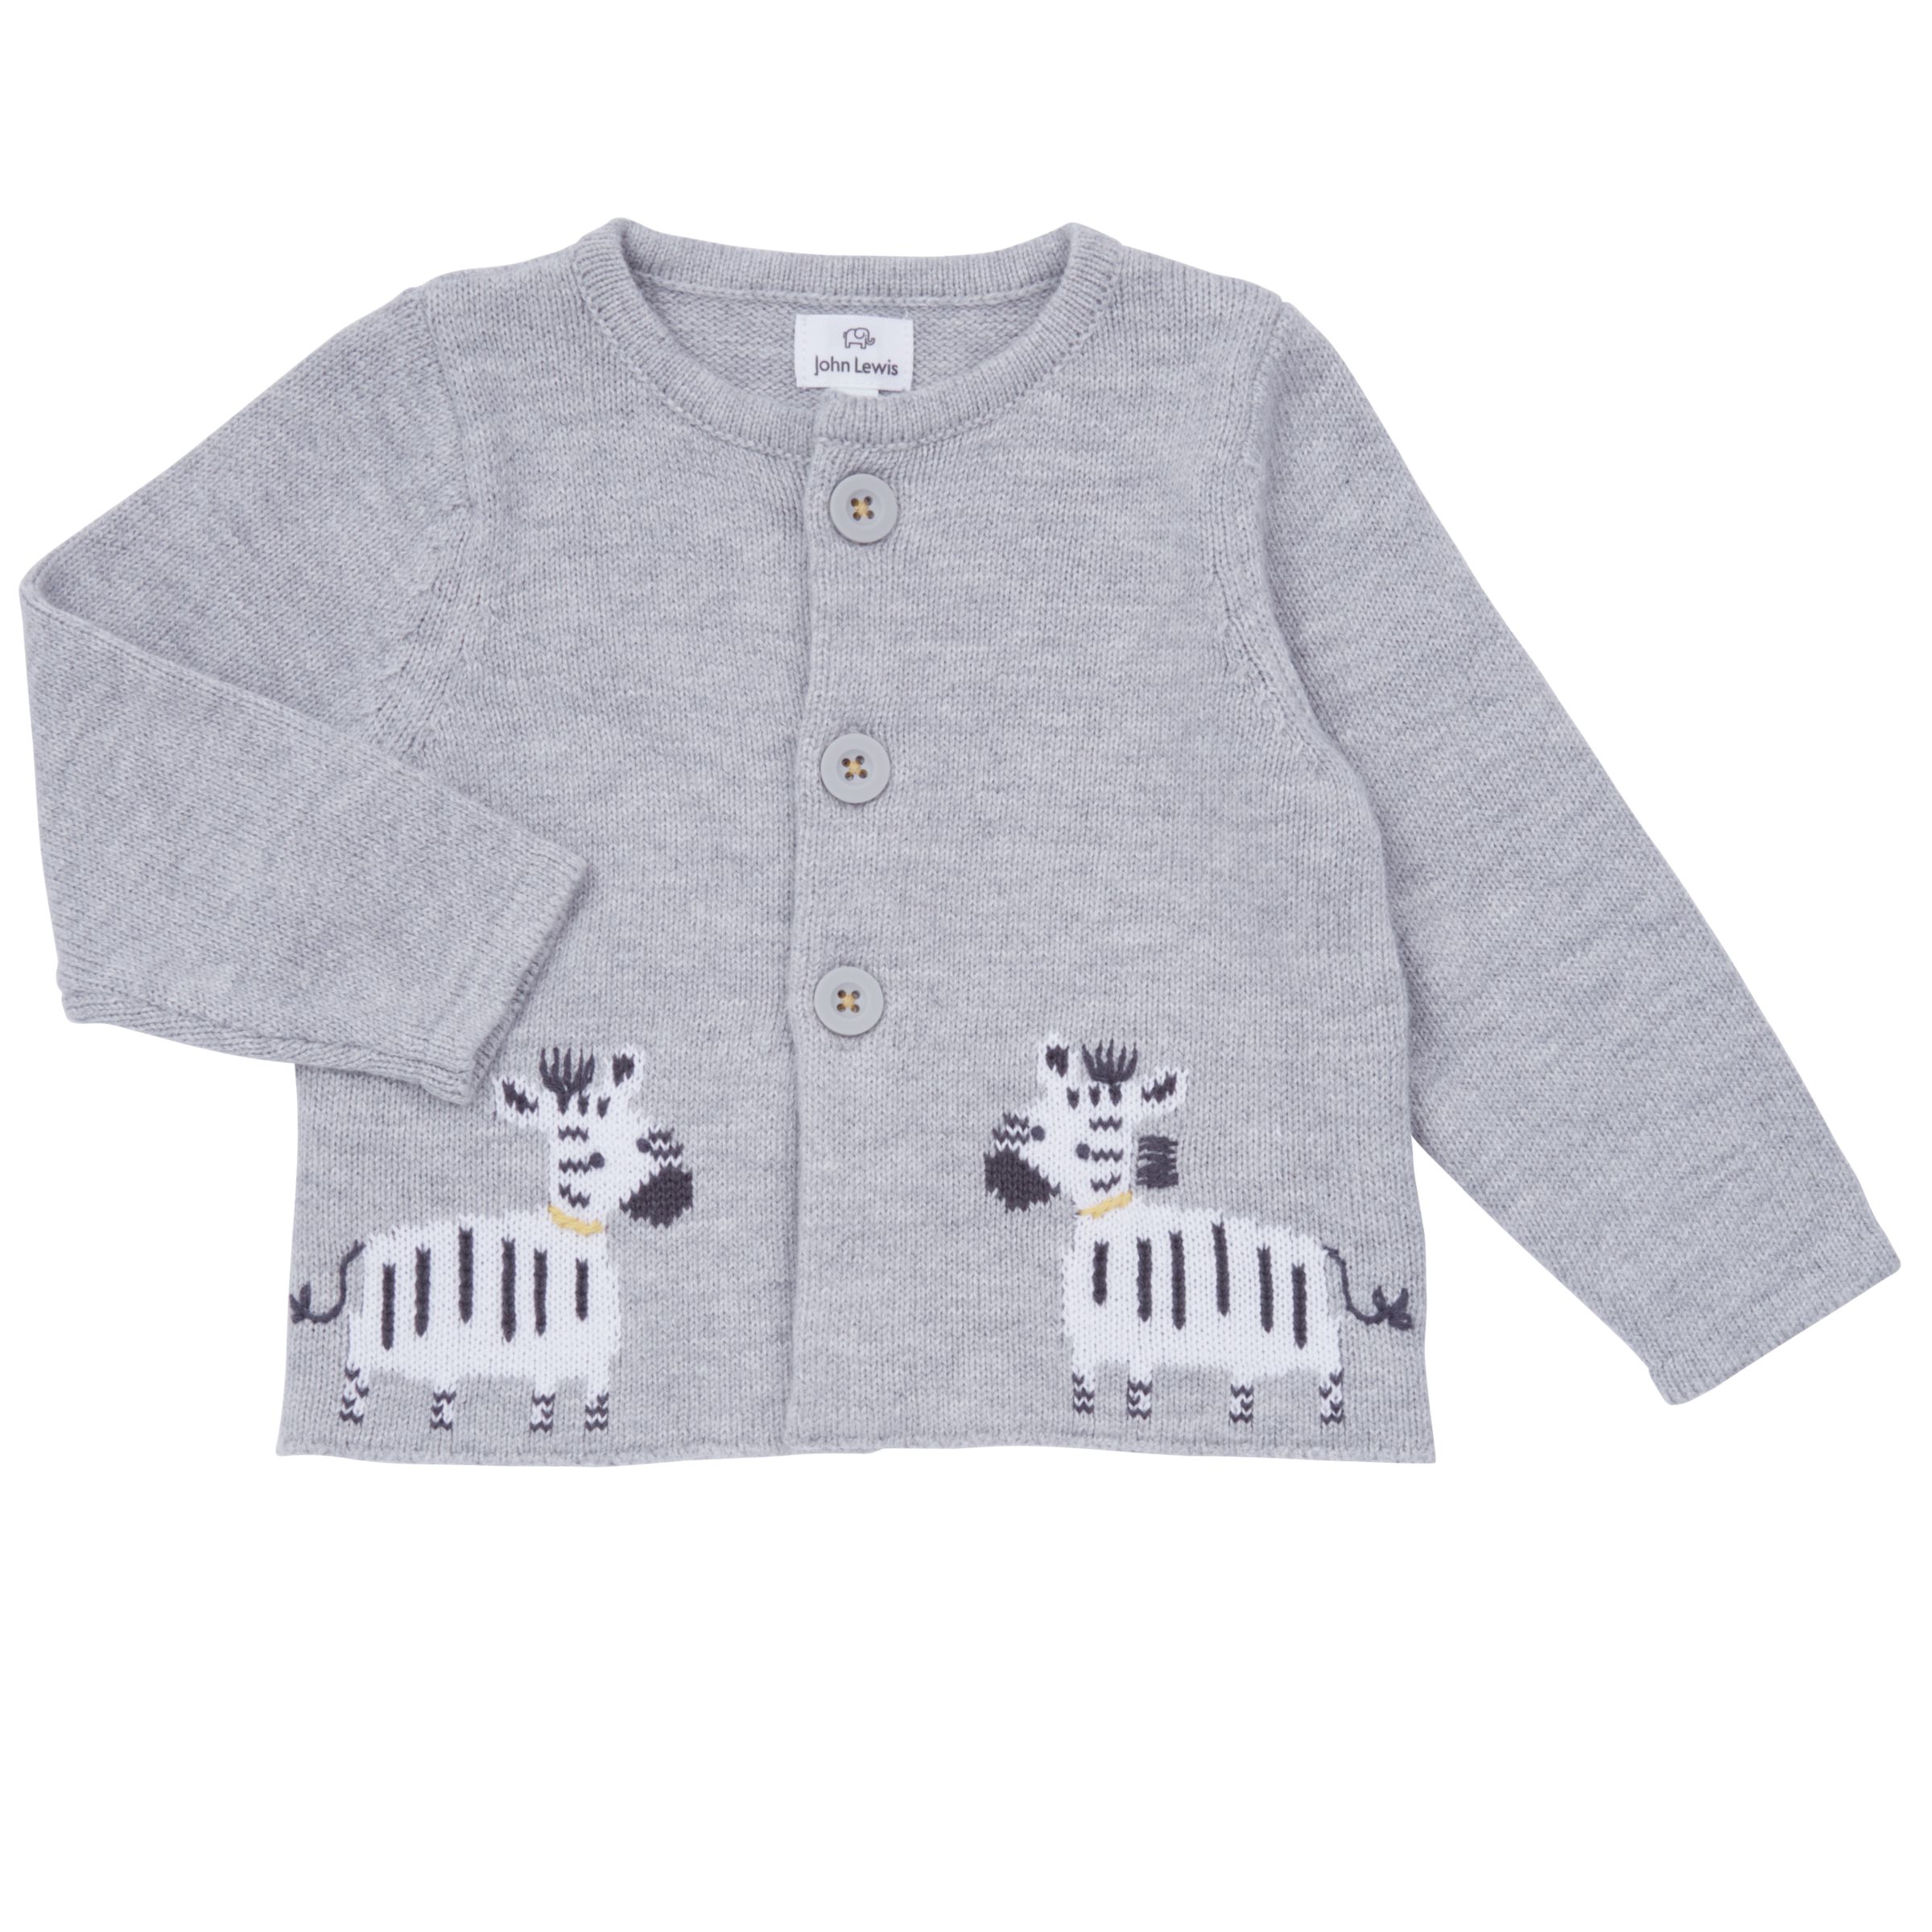 Buy John Lewis Baby Knitted Zebra Cardigan, Grey | John Lewis